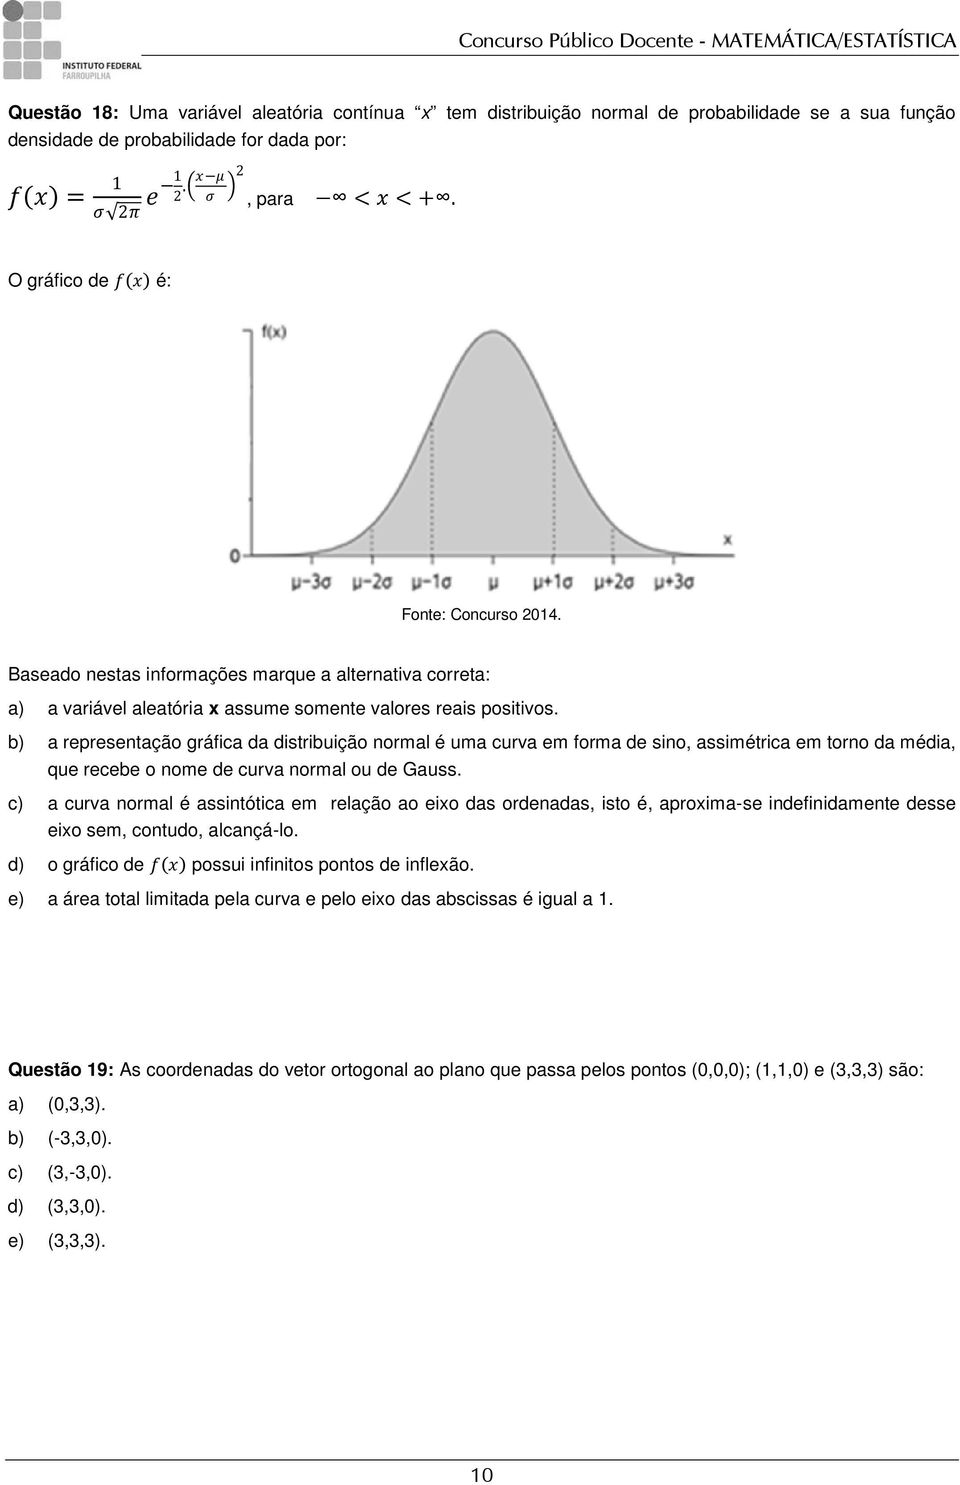 b) a representação gráfica da distribuição normal é uma curva em forma de sino, assimétrica em torno da média, que recebe o nome de curva normal ou de Gauss.